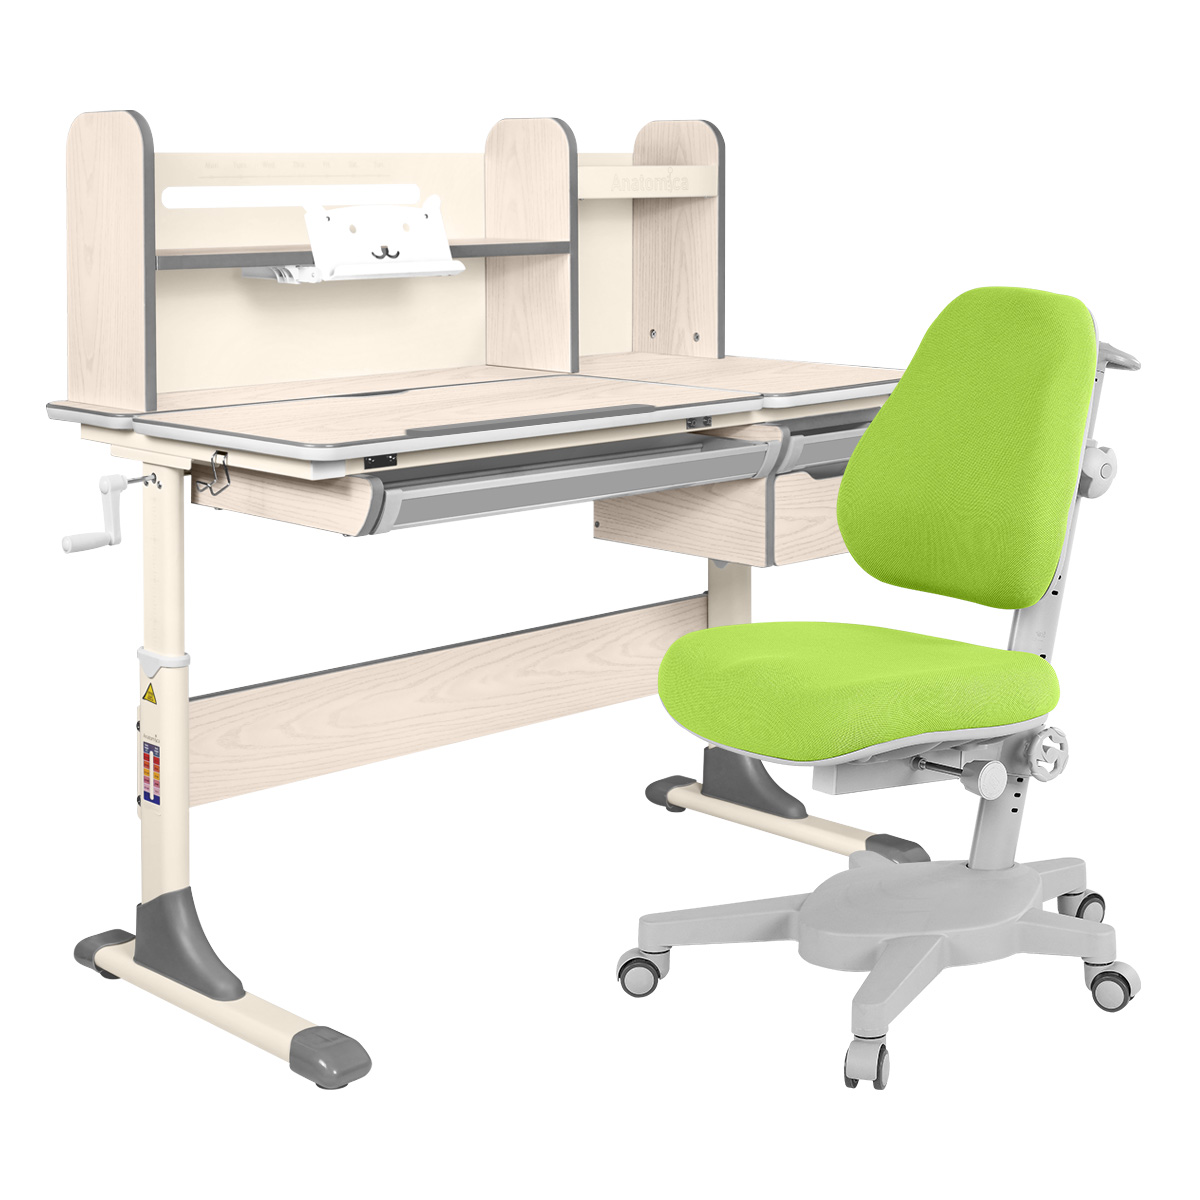 Комплект Anatomica парта Genius клен/серый с зеленым креслом Armata